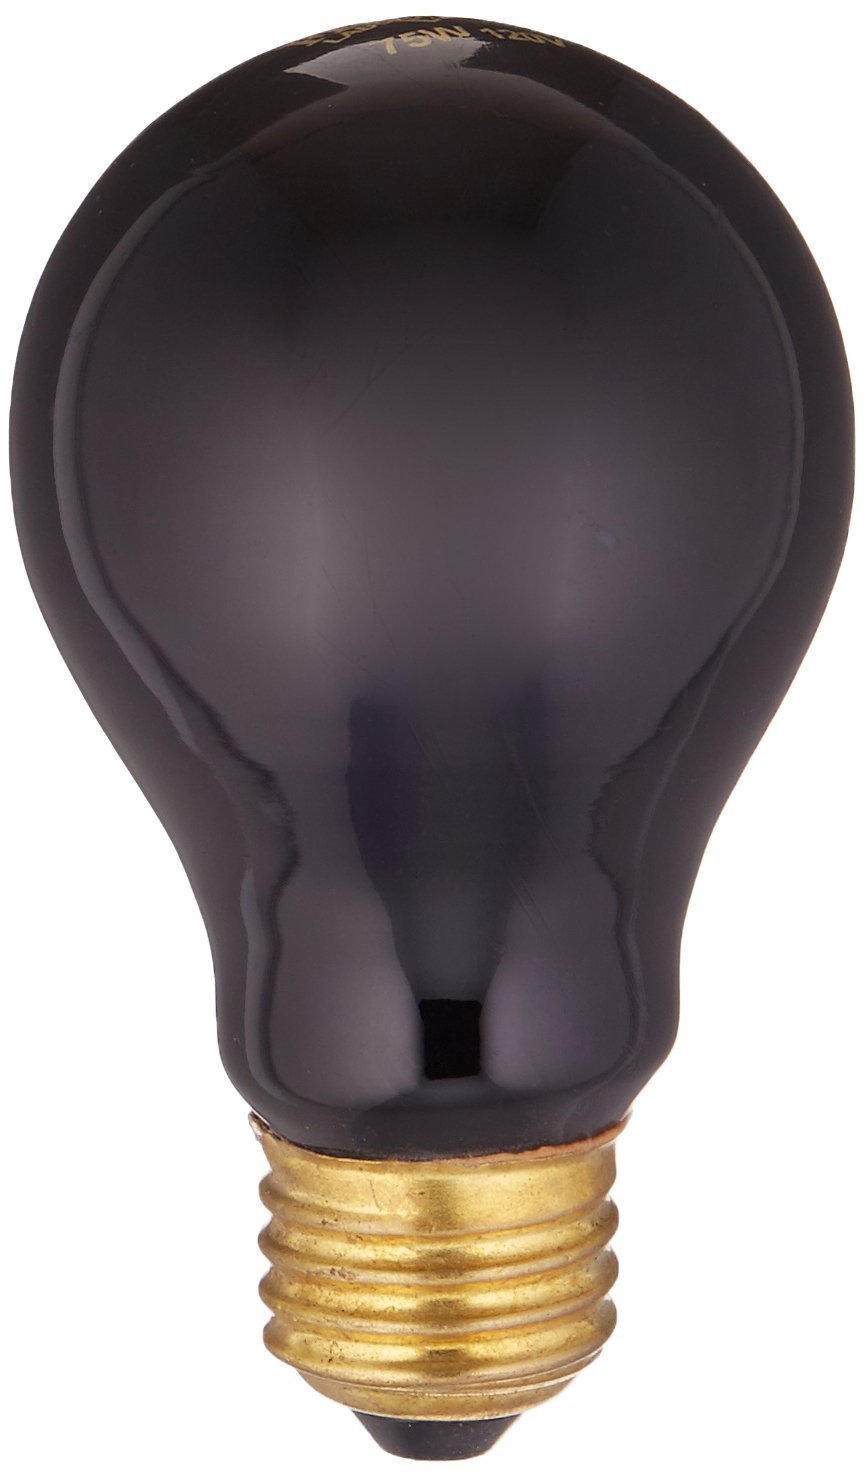 [Australia] - Fluker's Black Nightlight Bulbs for Reptiles 75 watts 